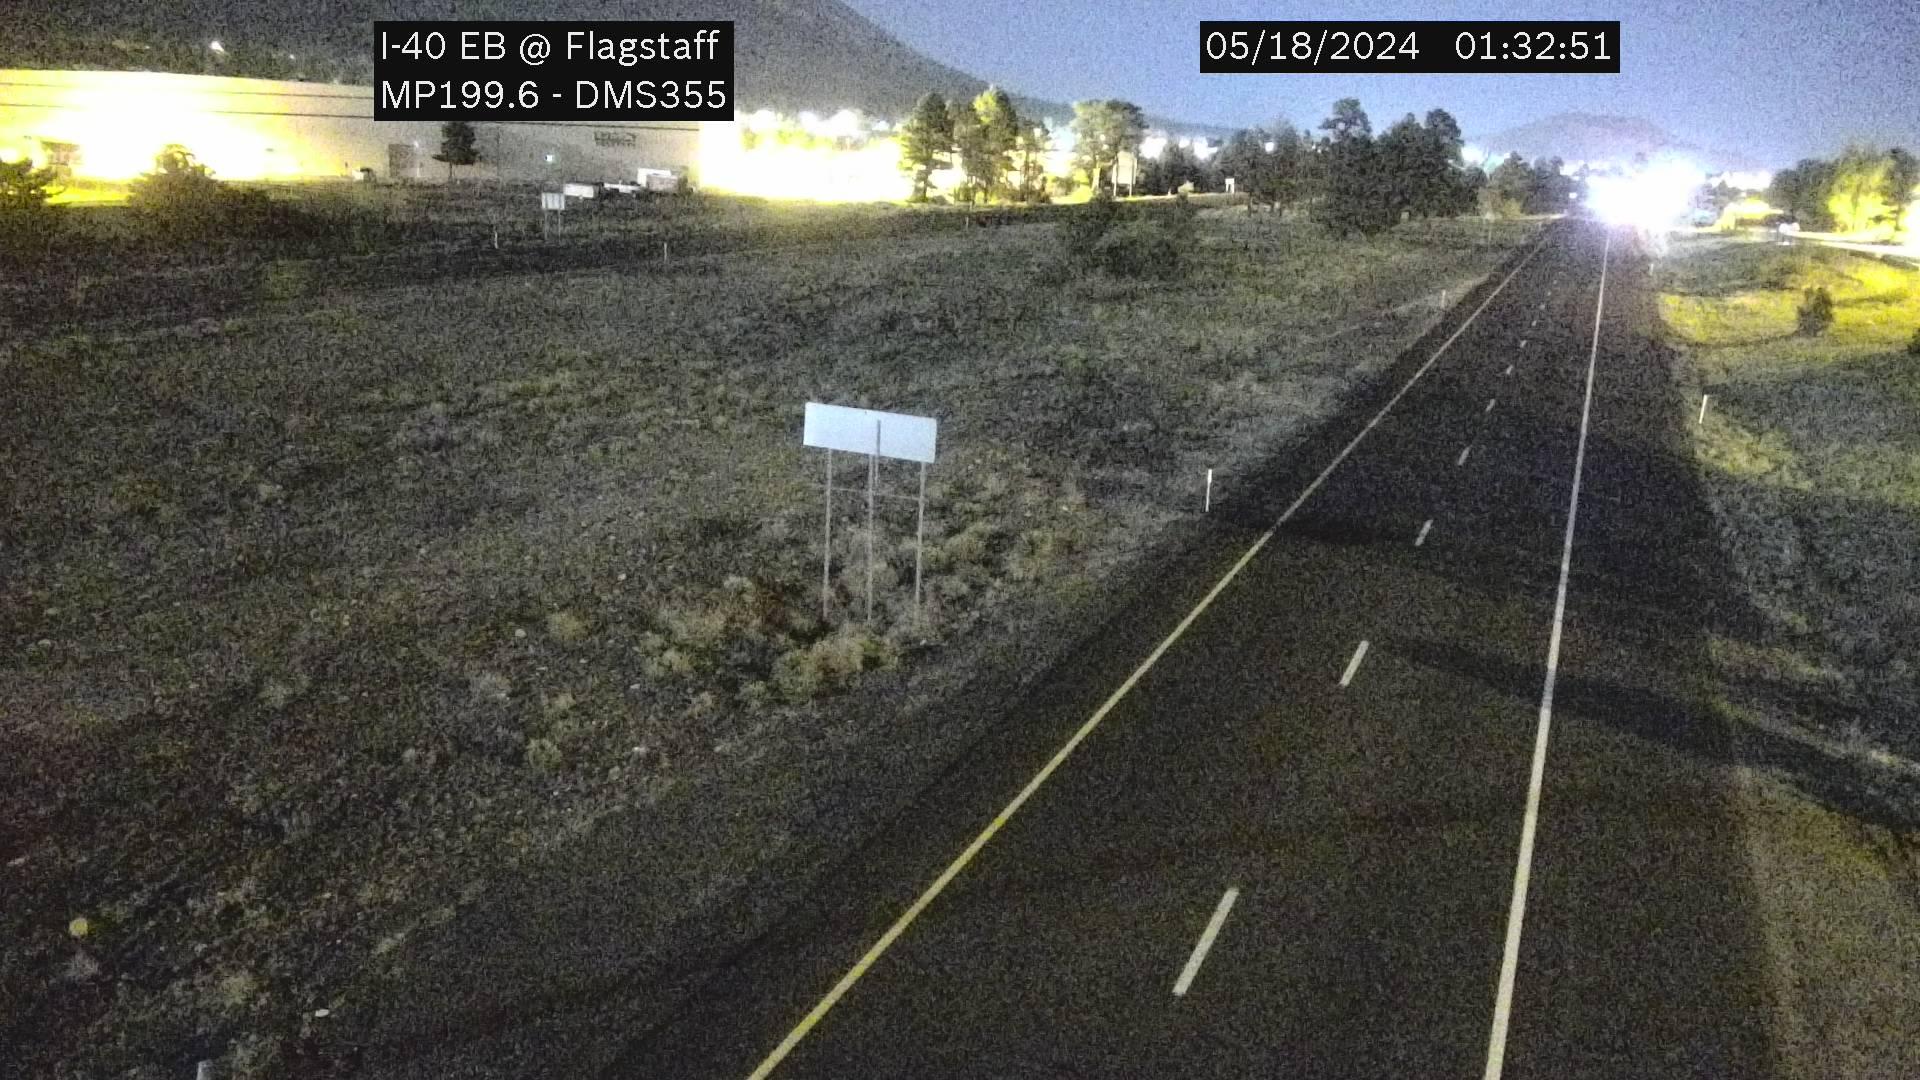 Elk Run › East: I-40 EB 199.60 @Flagstaff Traffic Camera